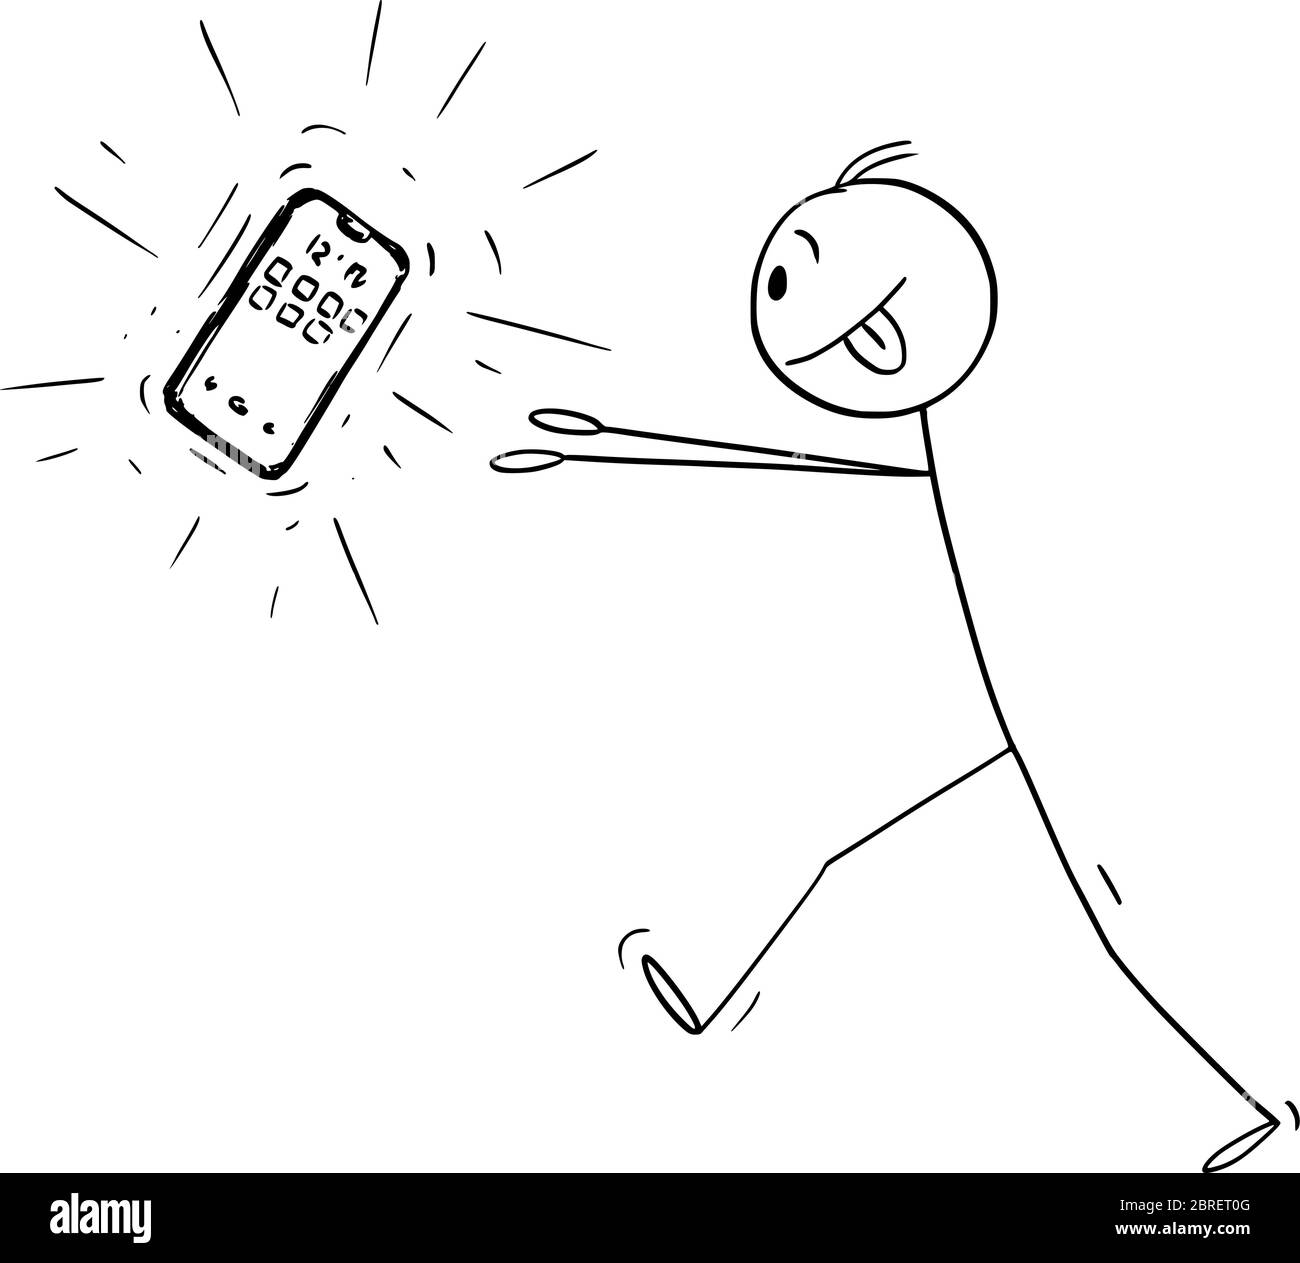 Grafico vettoriale del cartoon disegno illustrazione concettuale di un uomo addicted che prova ad ottenere il nuovo telefono o telefono cellulare o smartphone. Illustrazione Vettoriale